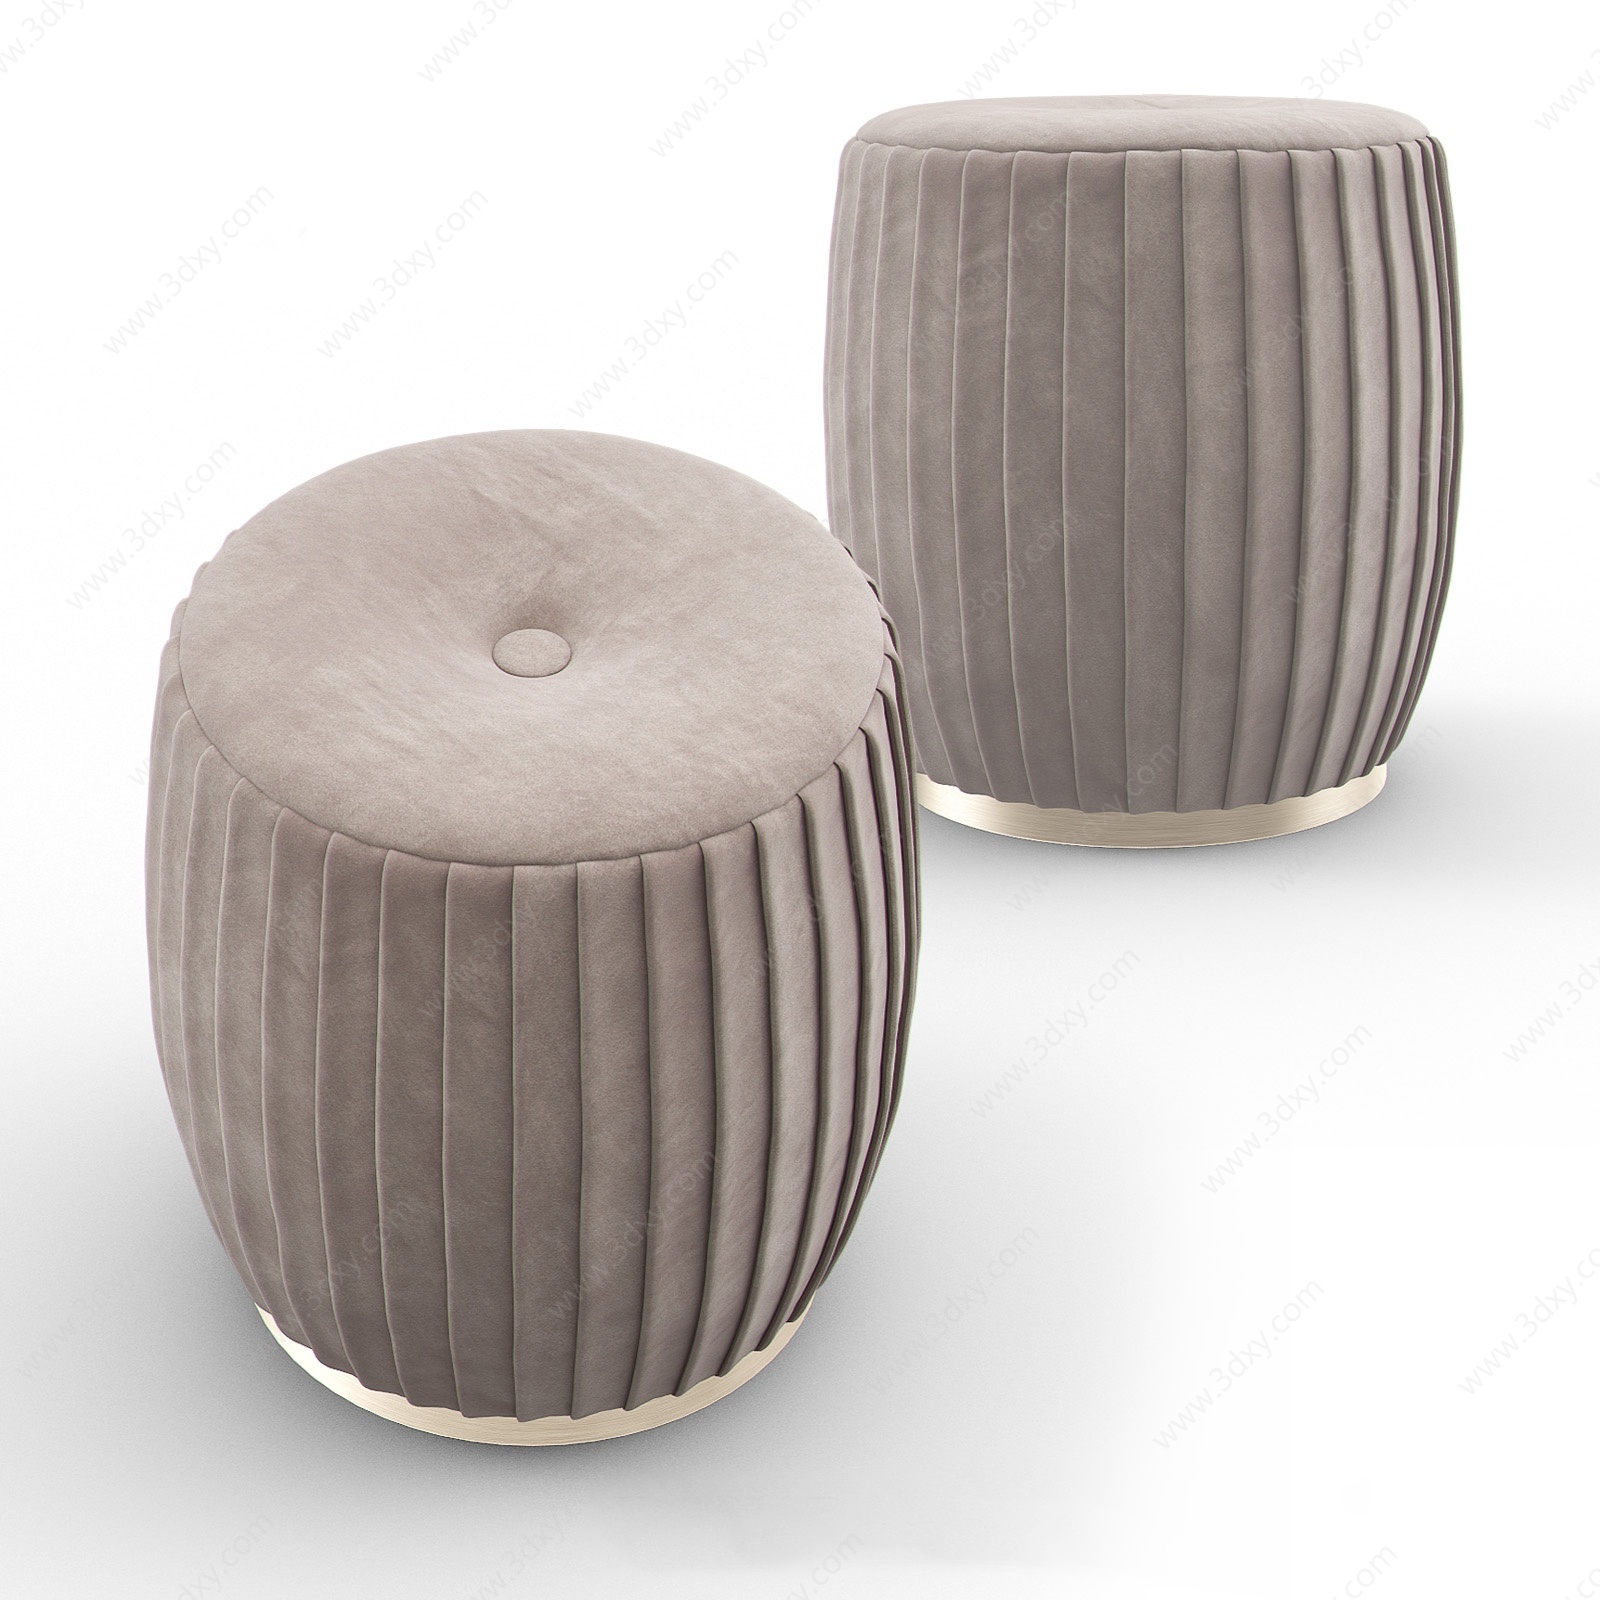 意大利布艺沙发凳凳子3D模型